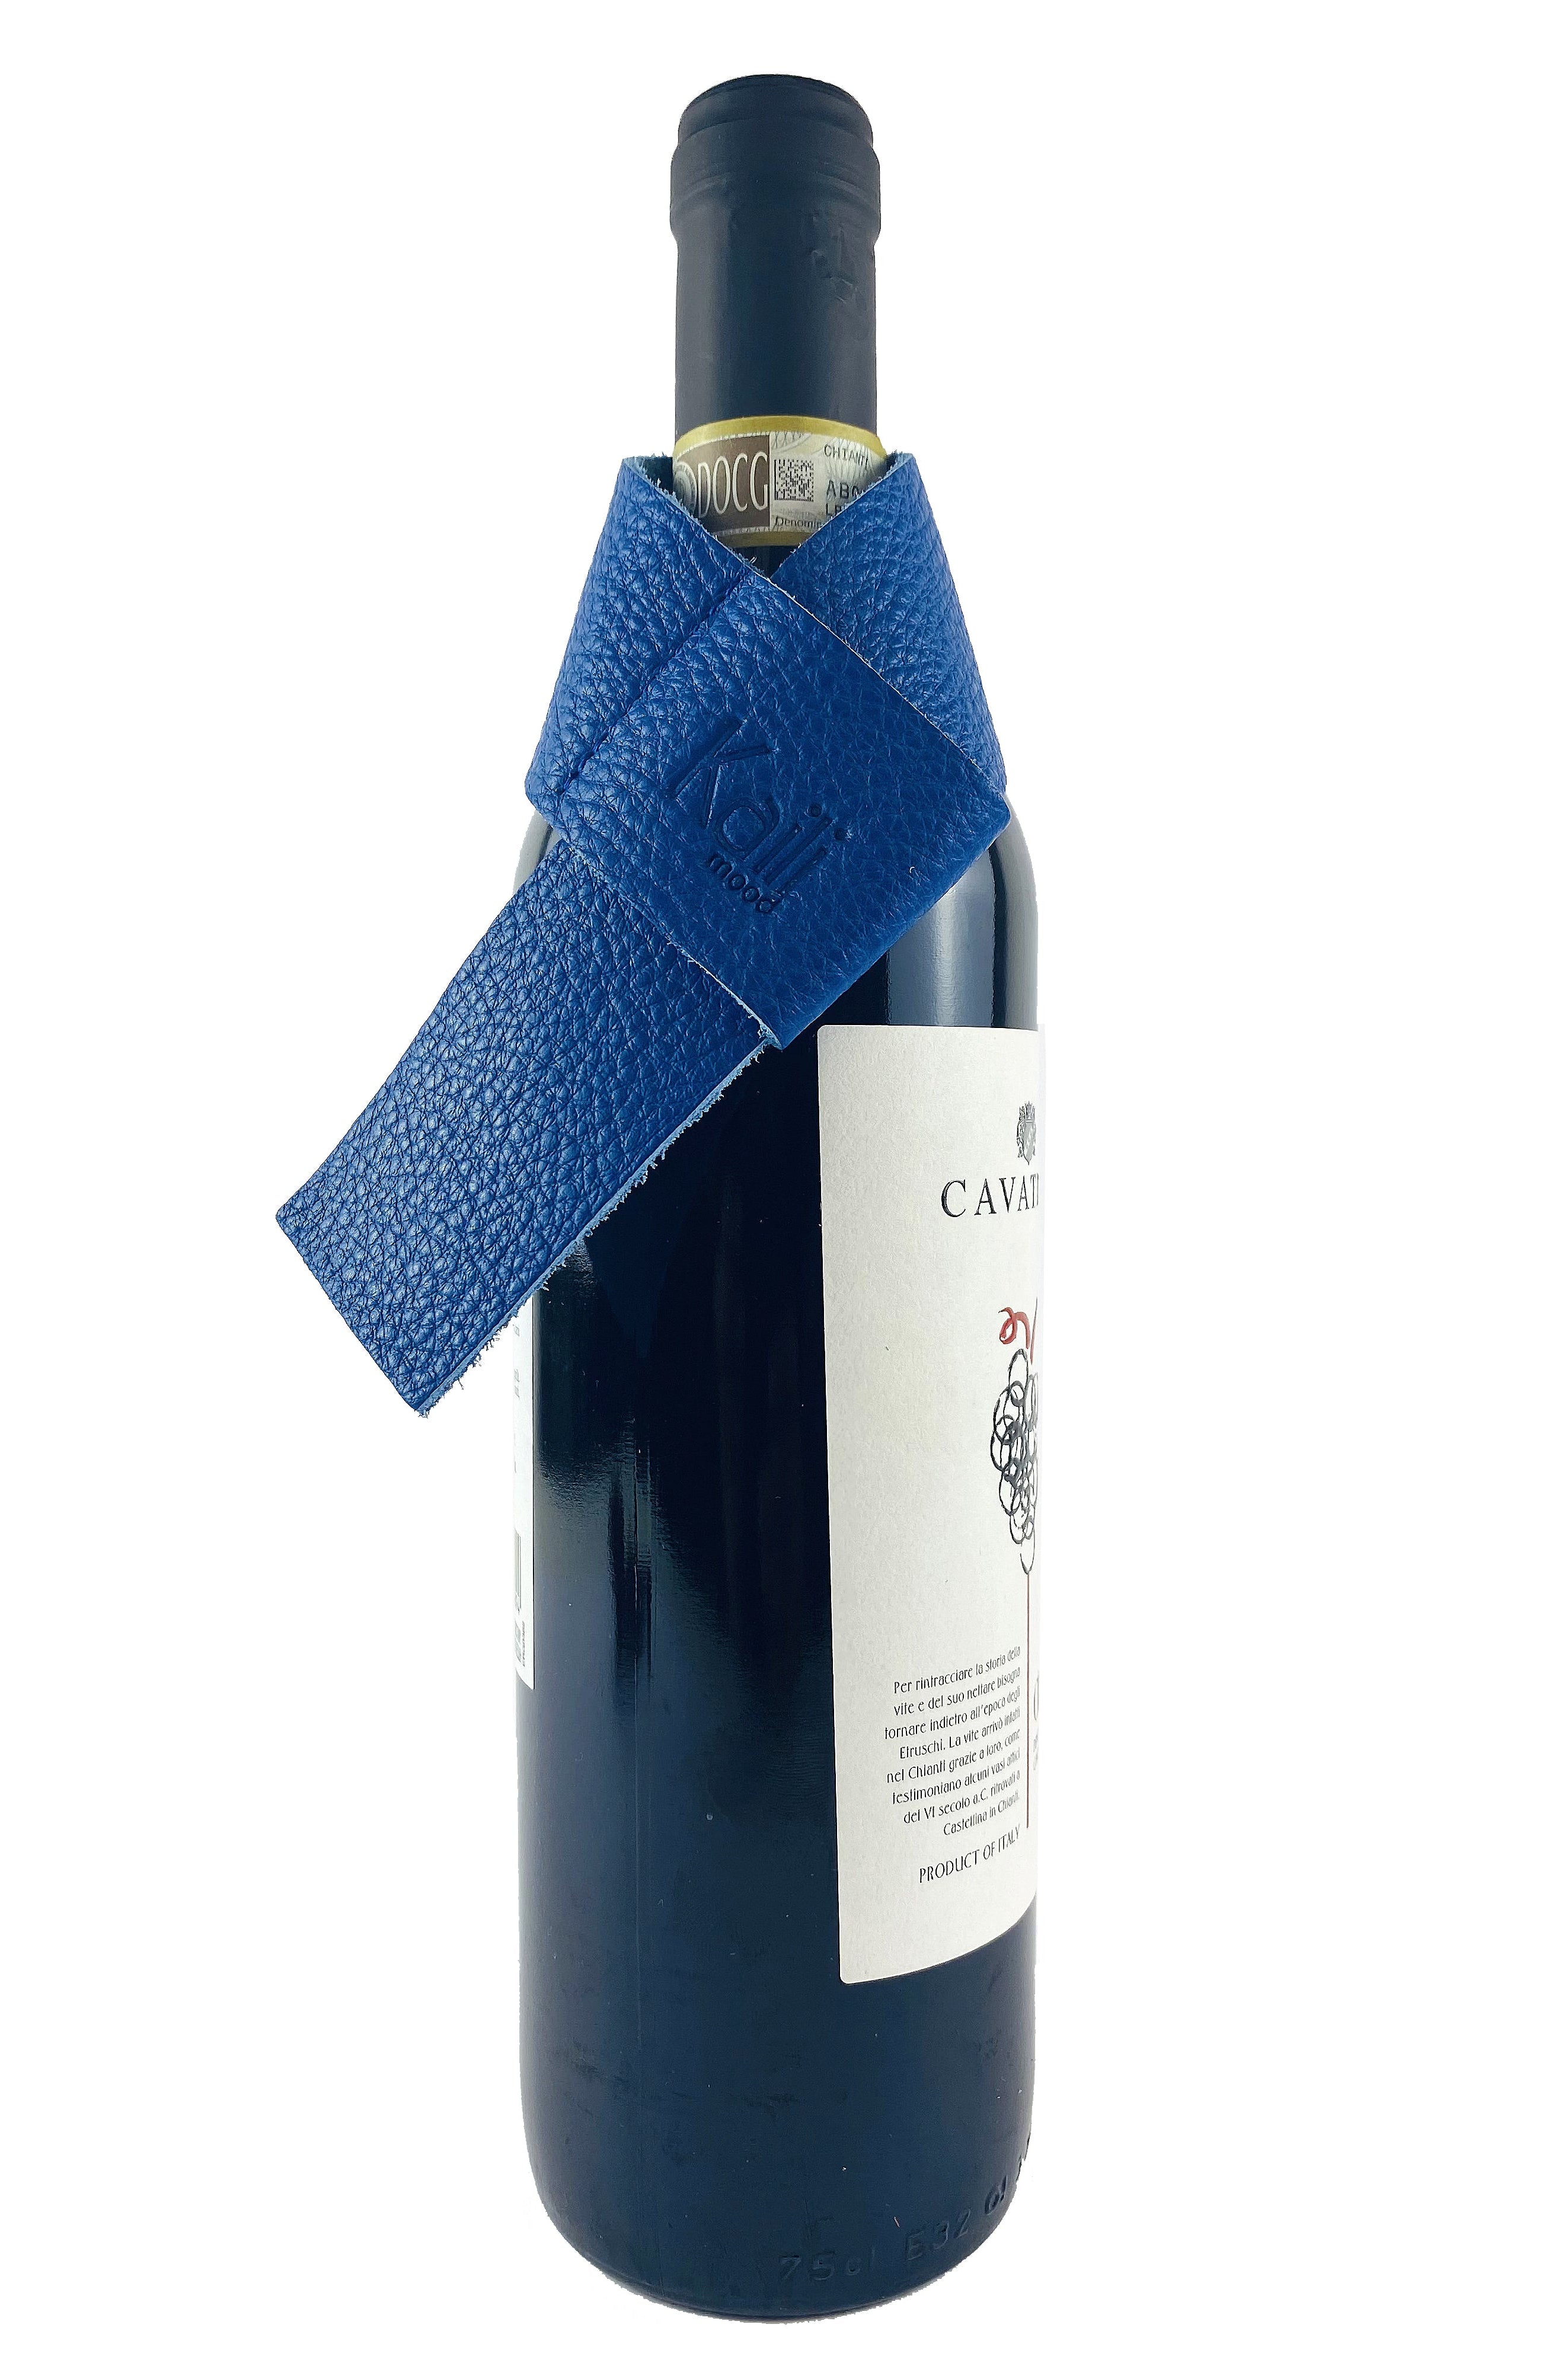 K0010DB | Salvagoccia per Bottiglia Made in Italy in Vera Pelle pieno fiore, grana dollaro - Colore Blu. Dimensioni: cm 27 x 4 x 0,5.  Confezione: Gift Box rigido fondo/coperchio Kailimood.store